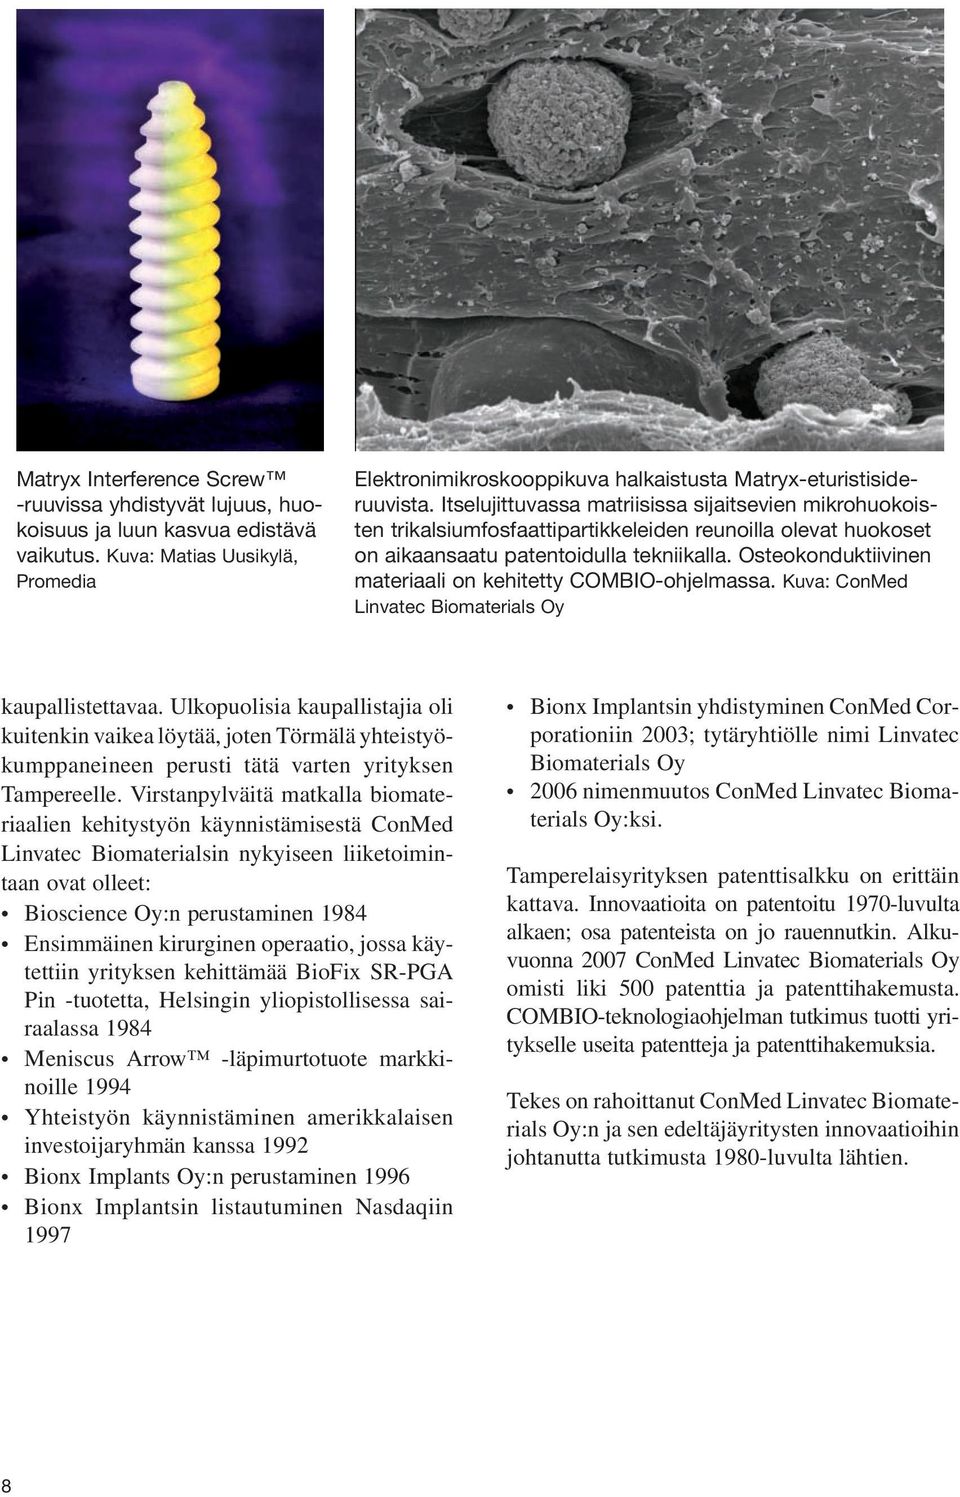 Osteokonduktiivinen materiaali on kehitetty COMBIO-ohjelmassa. Kuva: ConMed Linvatec Biomaterials Oy kaupallistettavaa.